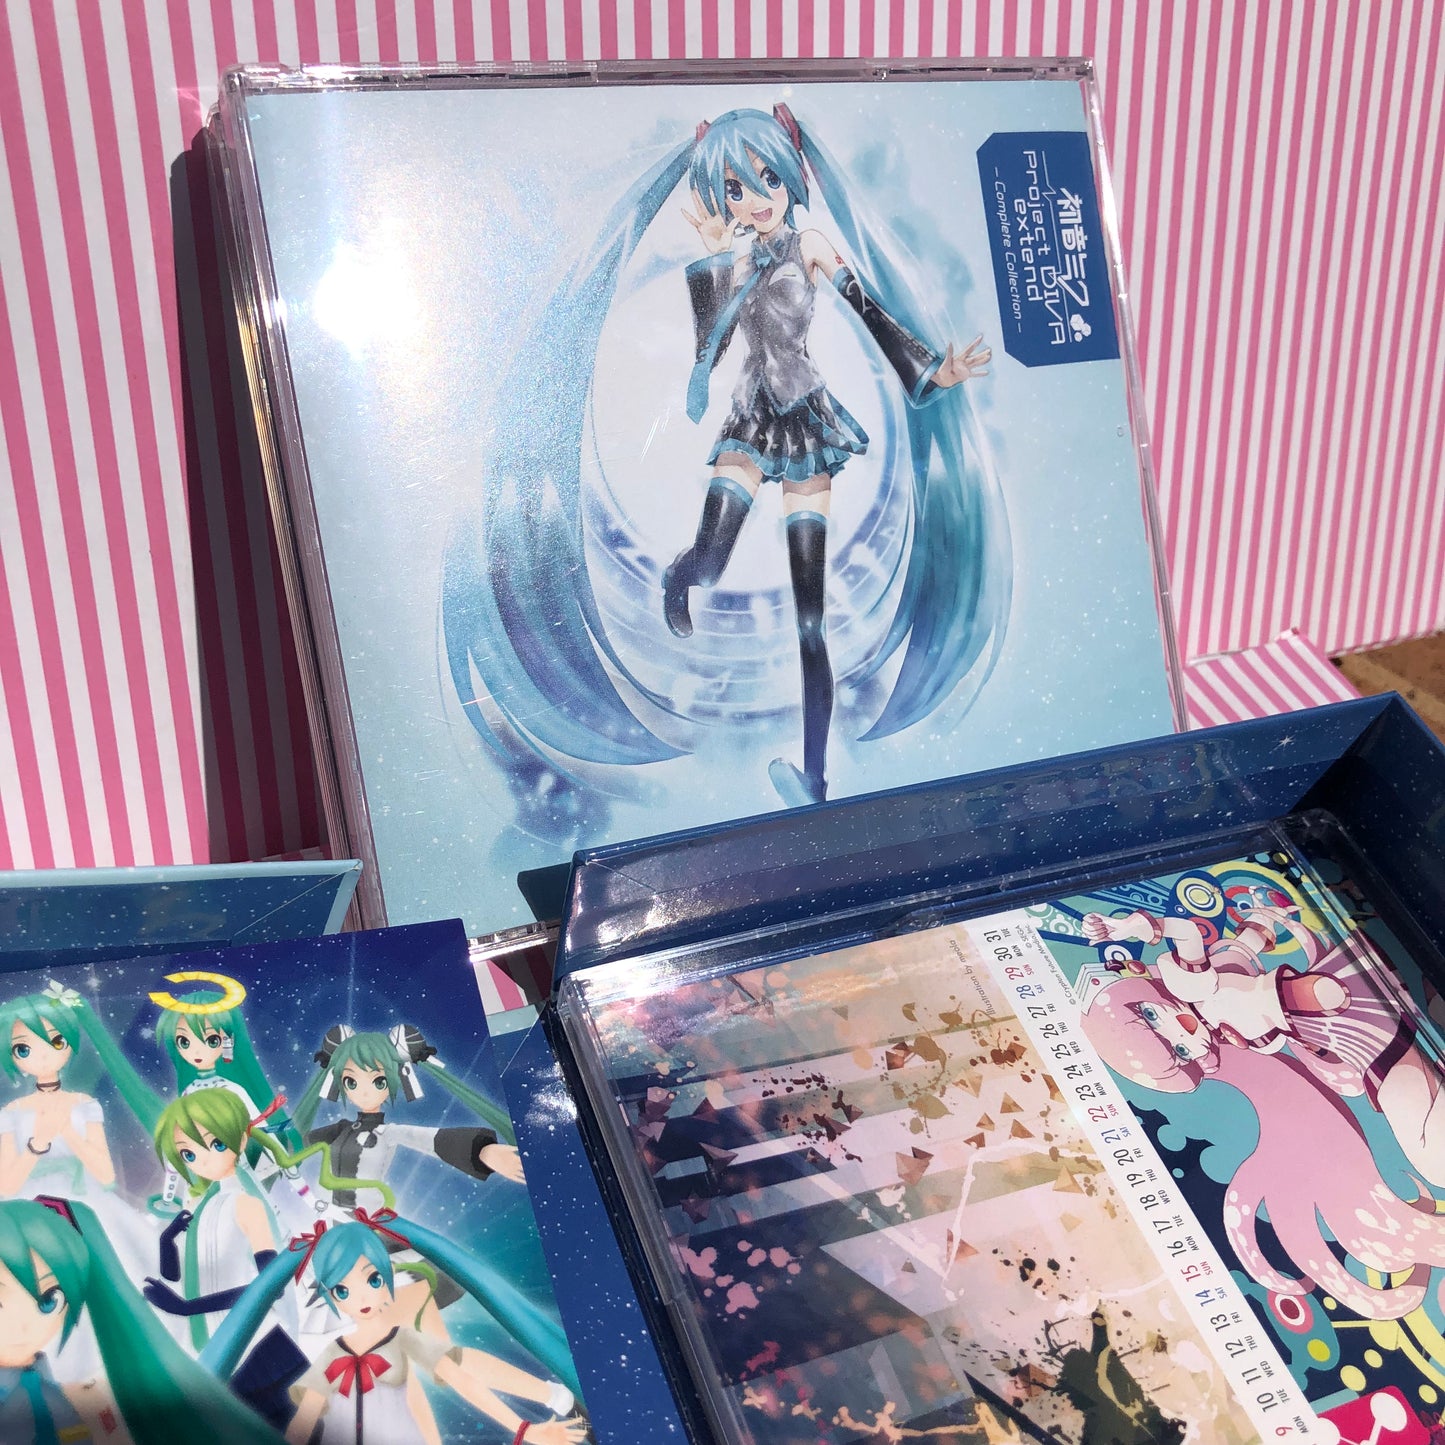 Vocaloid Hatsune Miku Project Diva Collection complète étendue (2CD + DVD + calendrier)